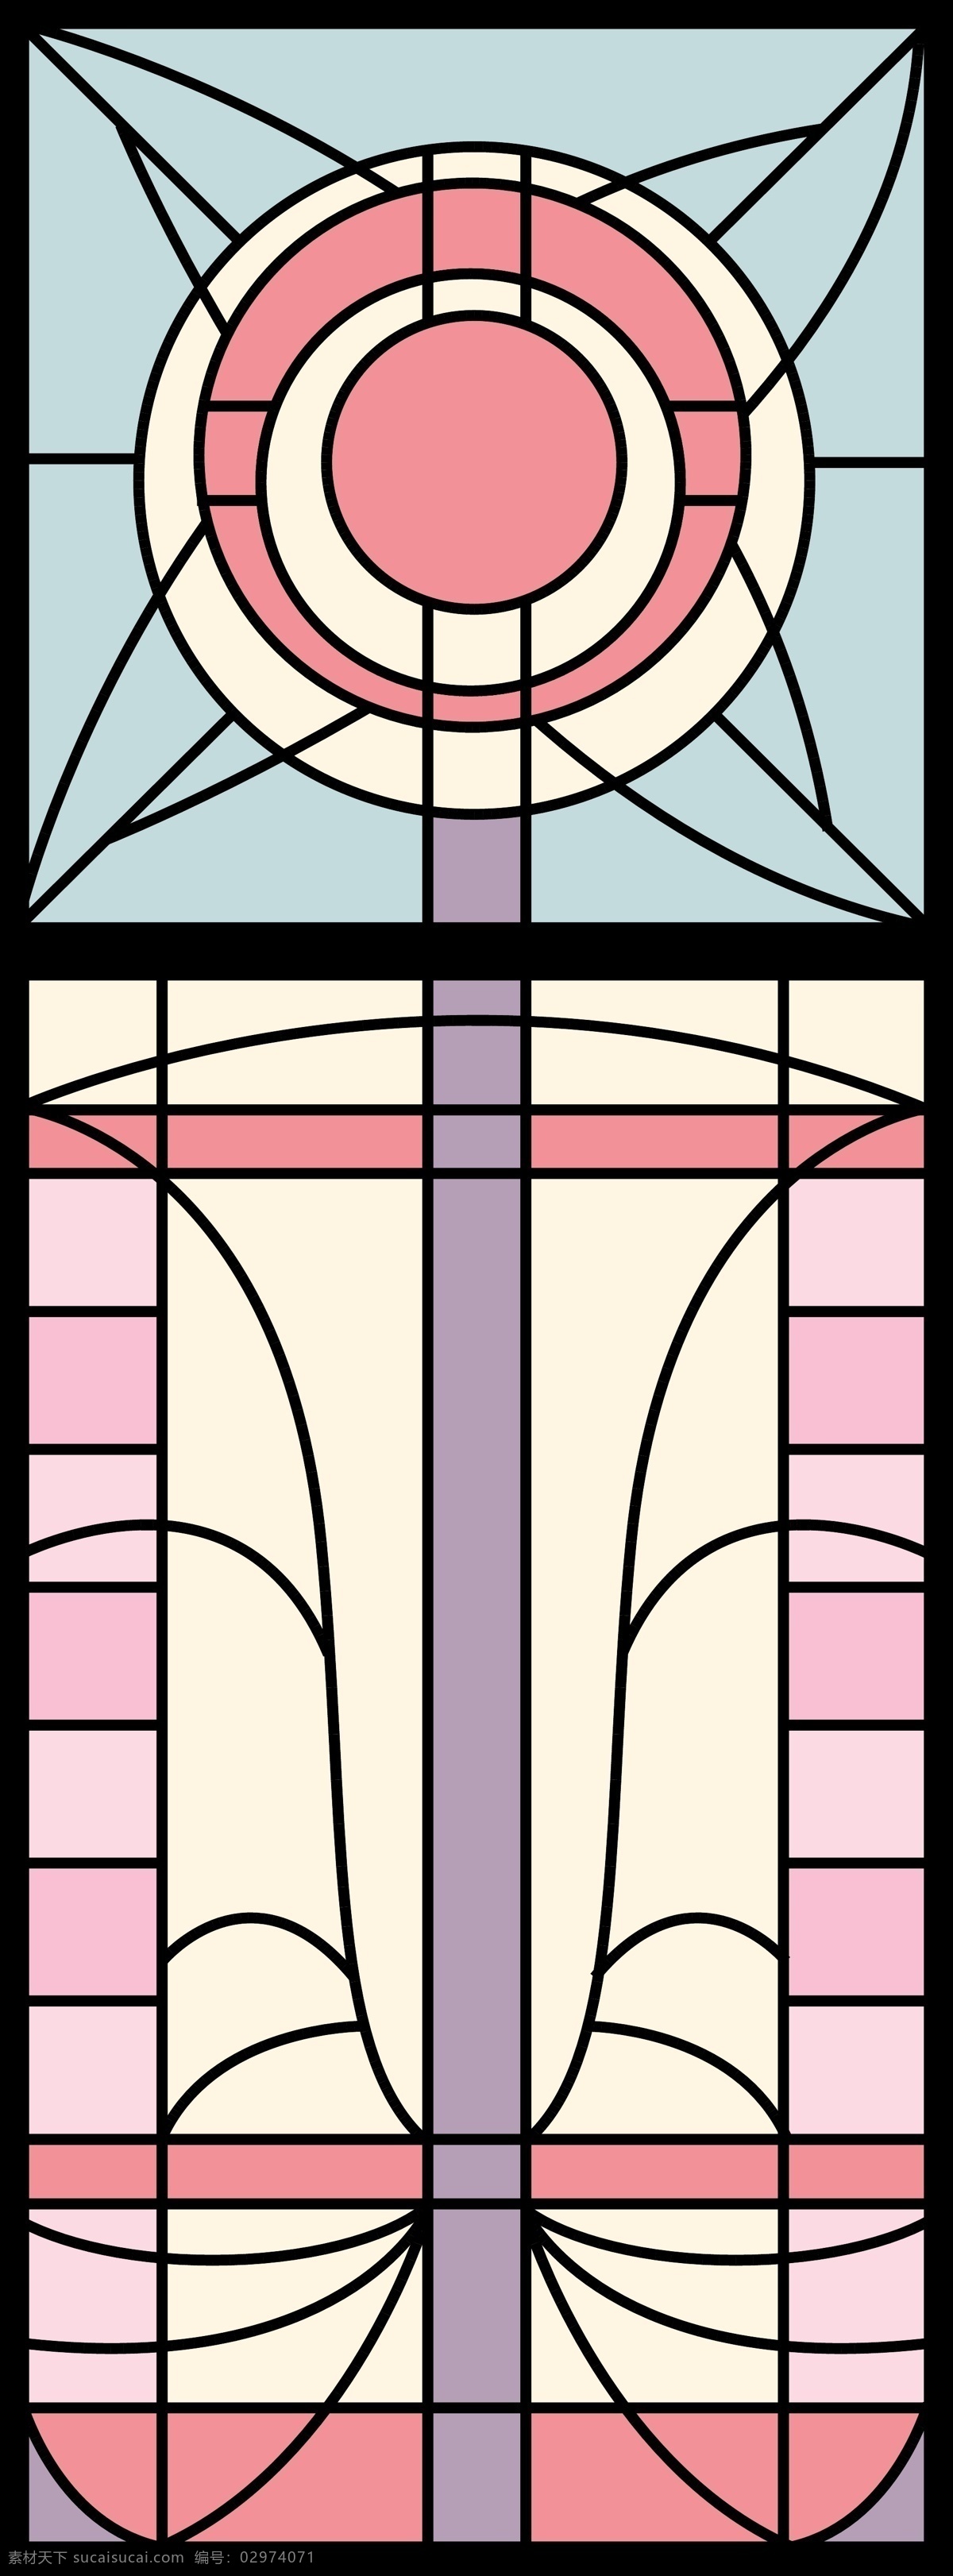 镶嵌 玻璃 窗户 屏风 文化艺术 移门 宗教信仰 镶嵌玻璃 教堂玻璃 矢量